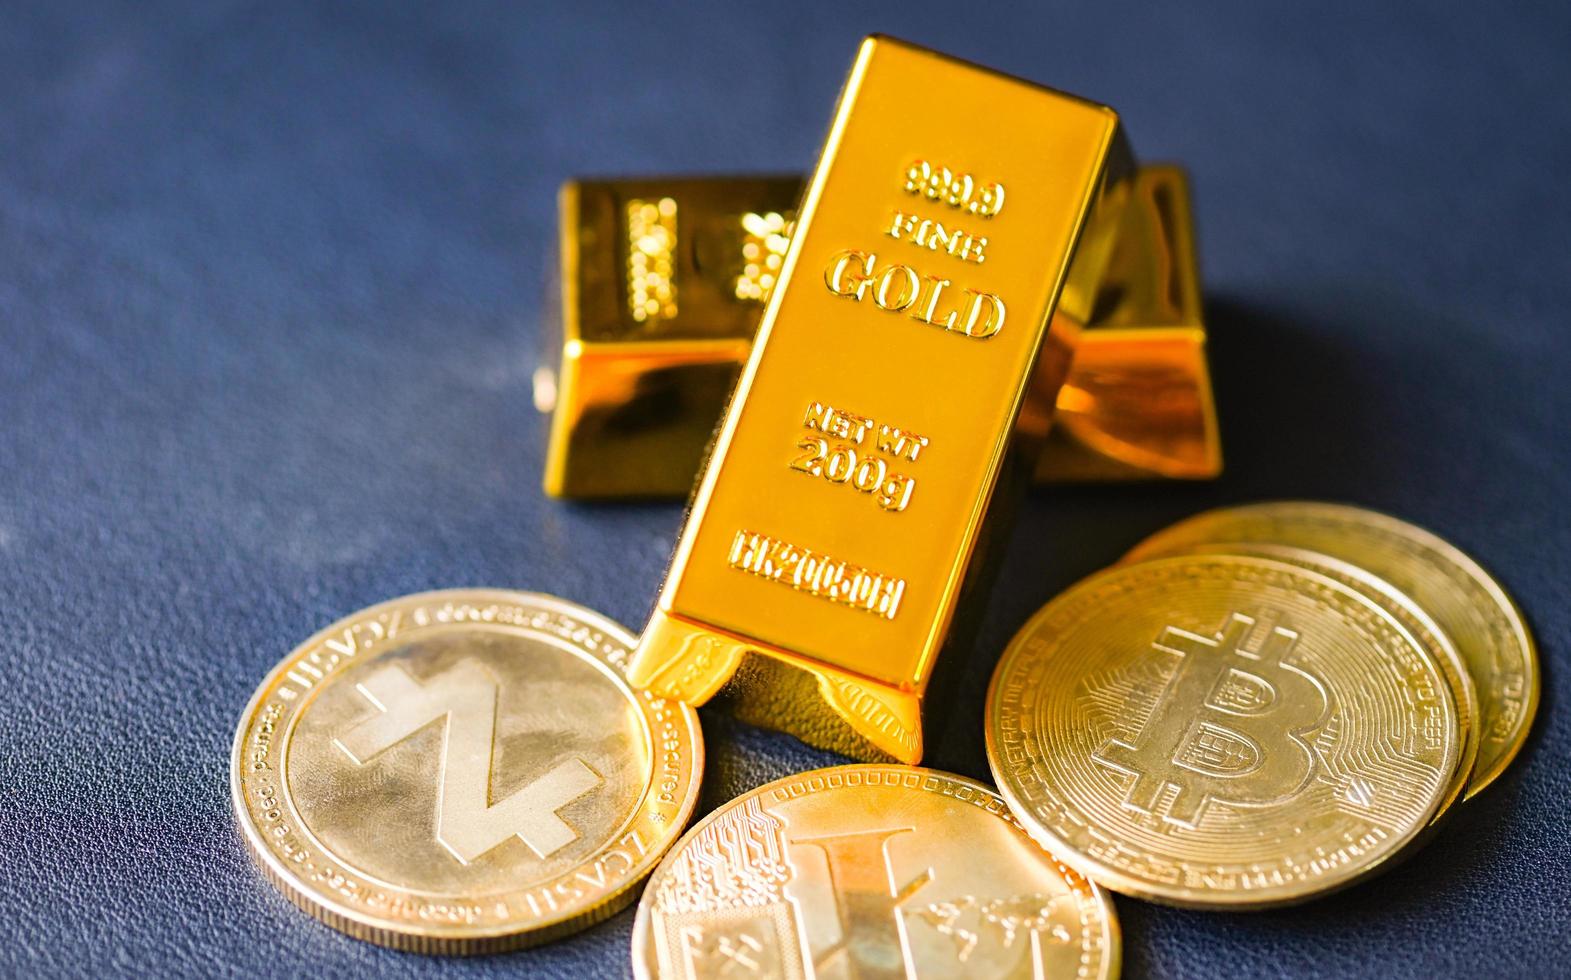 criptomoeda bitcoin e negociação de ouro, barras de ouro no fundo da mesa, pilha de barras de ouro conceitos de economia de negócios financeiros, sucesso de riqueza em negócios e finanças foto